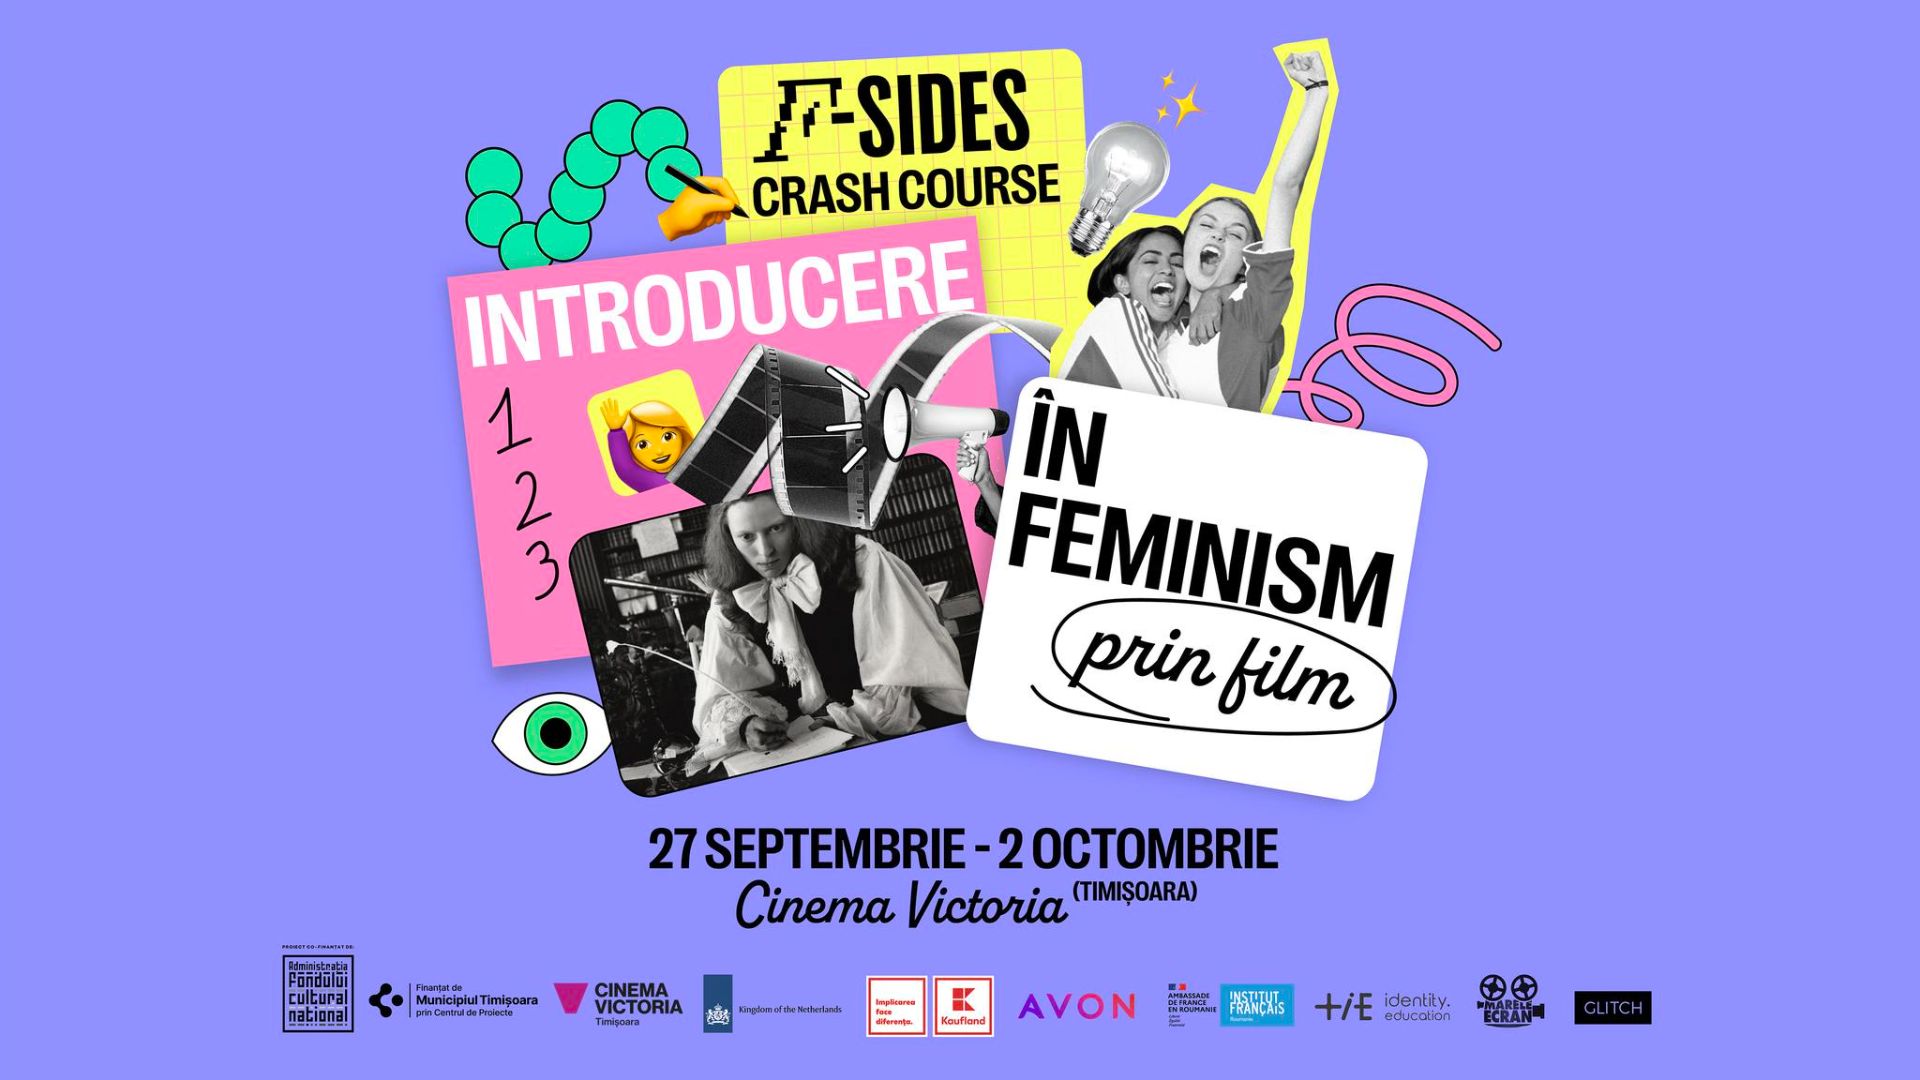 Program de introducere în feminism prin film, la Timişoara